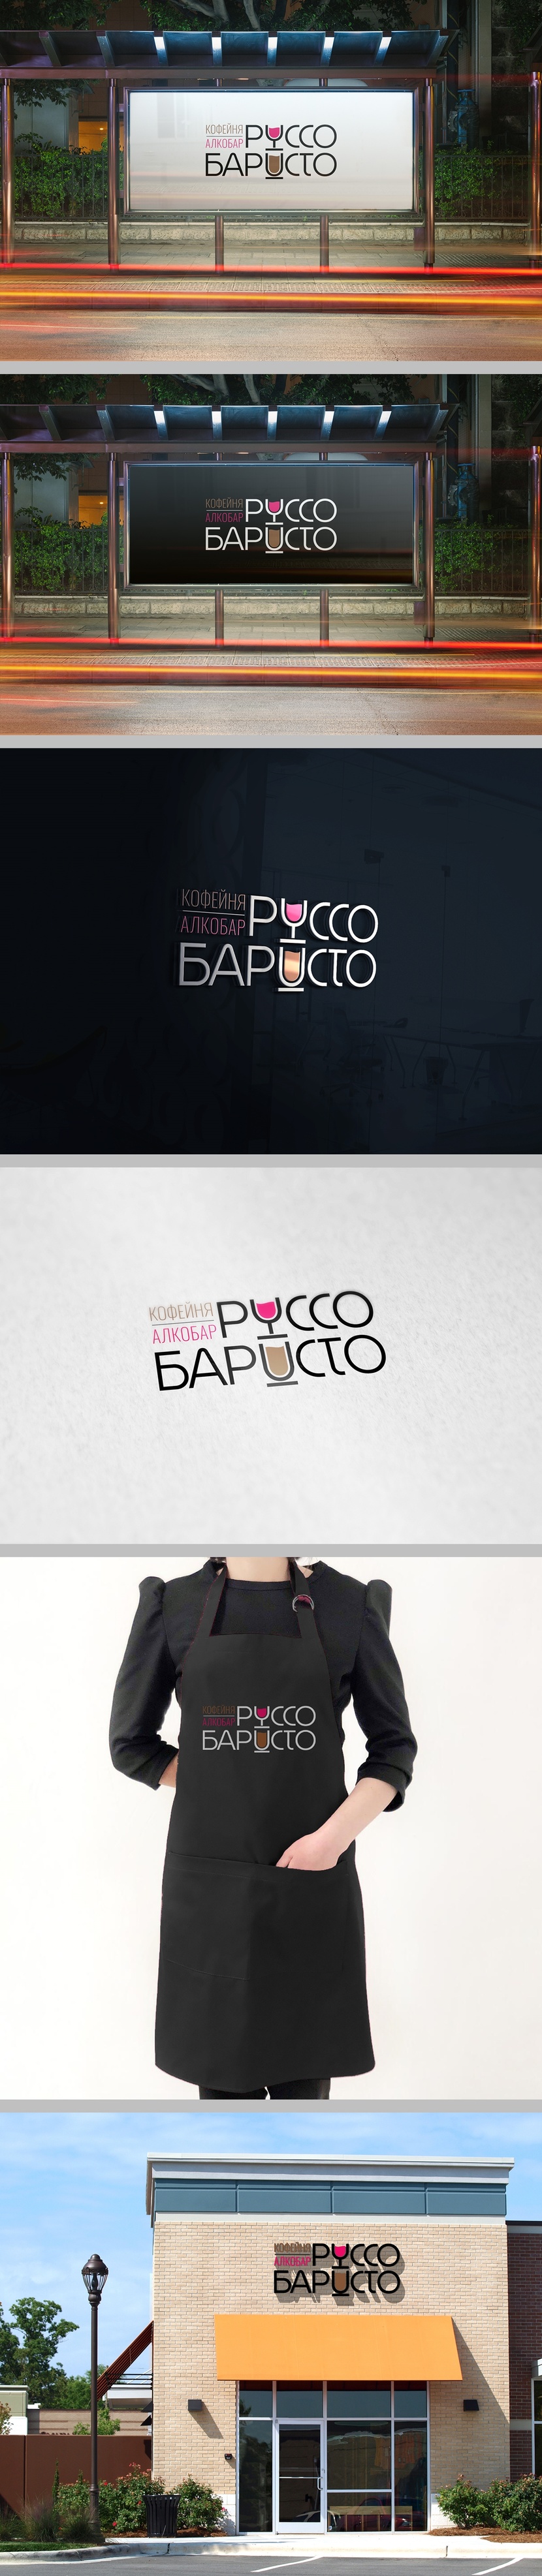 Внес правки - Создание логотипа для Кофейни - алкобара "Руссо баристо"